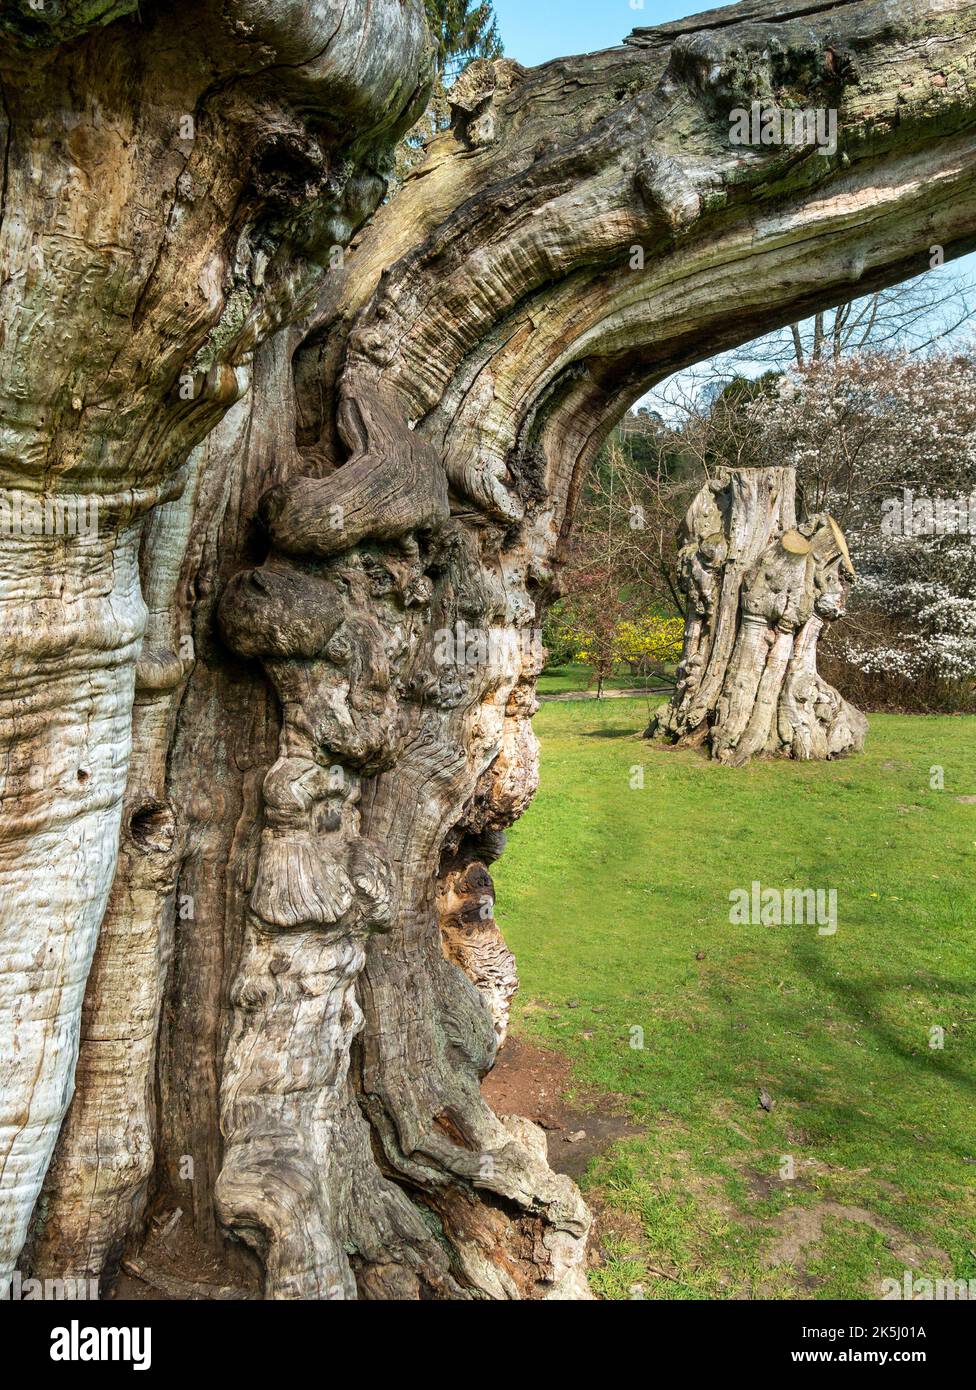 Souches massives de tronc de châtaignier sucré (Castanea sativa) dans les jardins de Sheffield Park, East Sussex, Angleterre, Royaume-Uni Banque D'Images